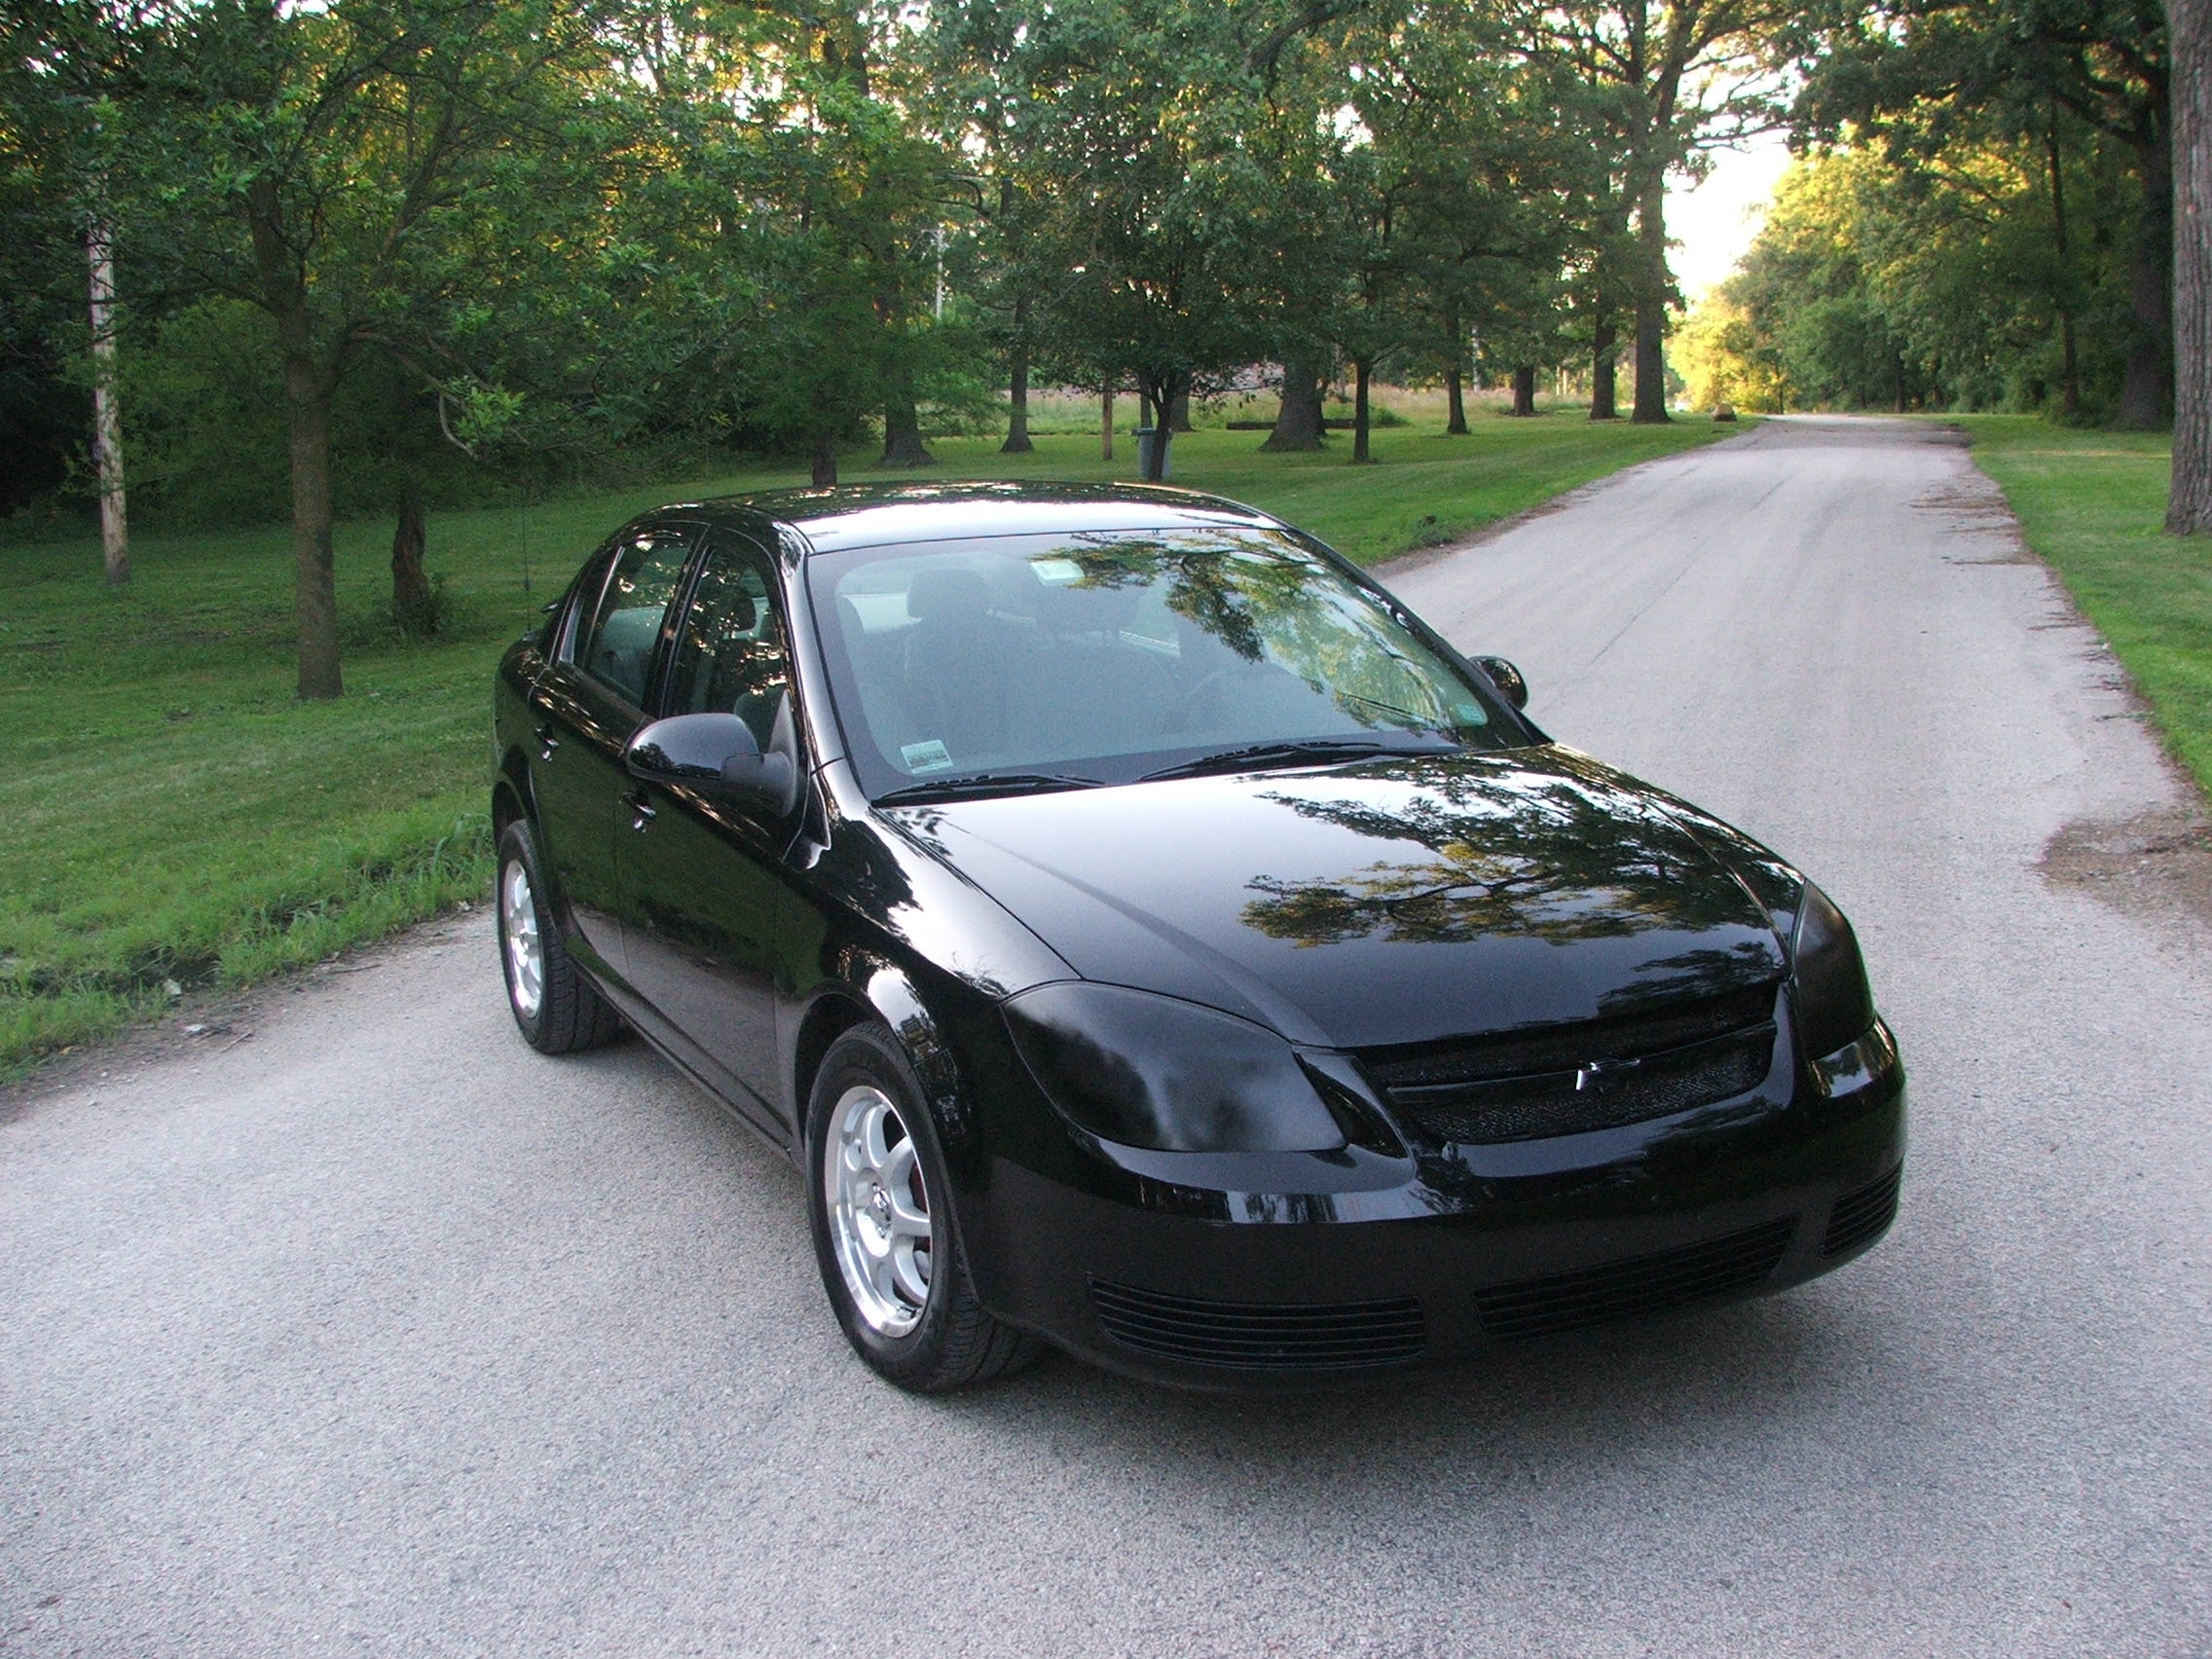  2006 Chevrolet Cobalt 2.2 LT Sedan